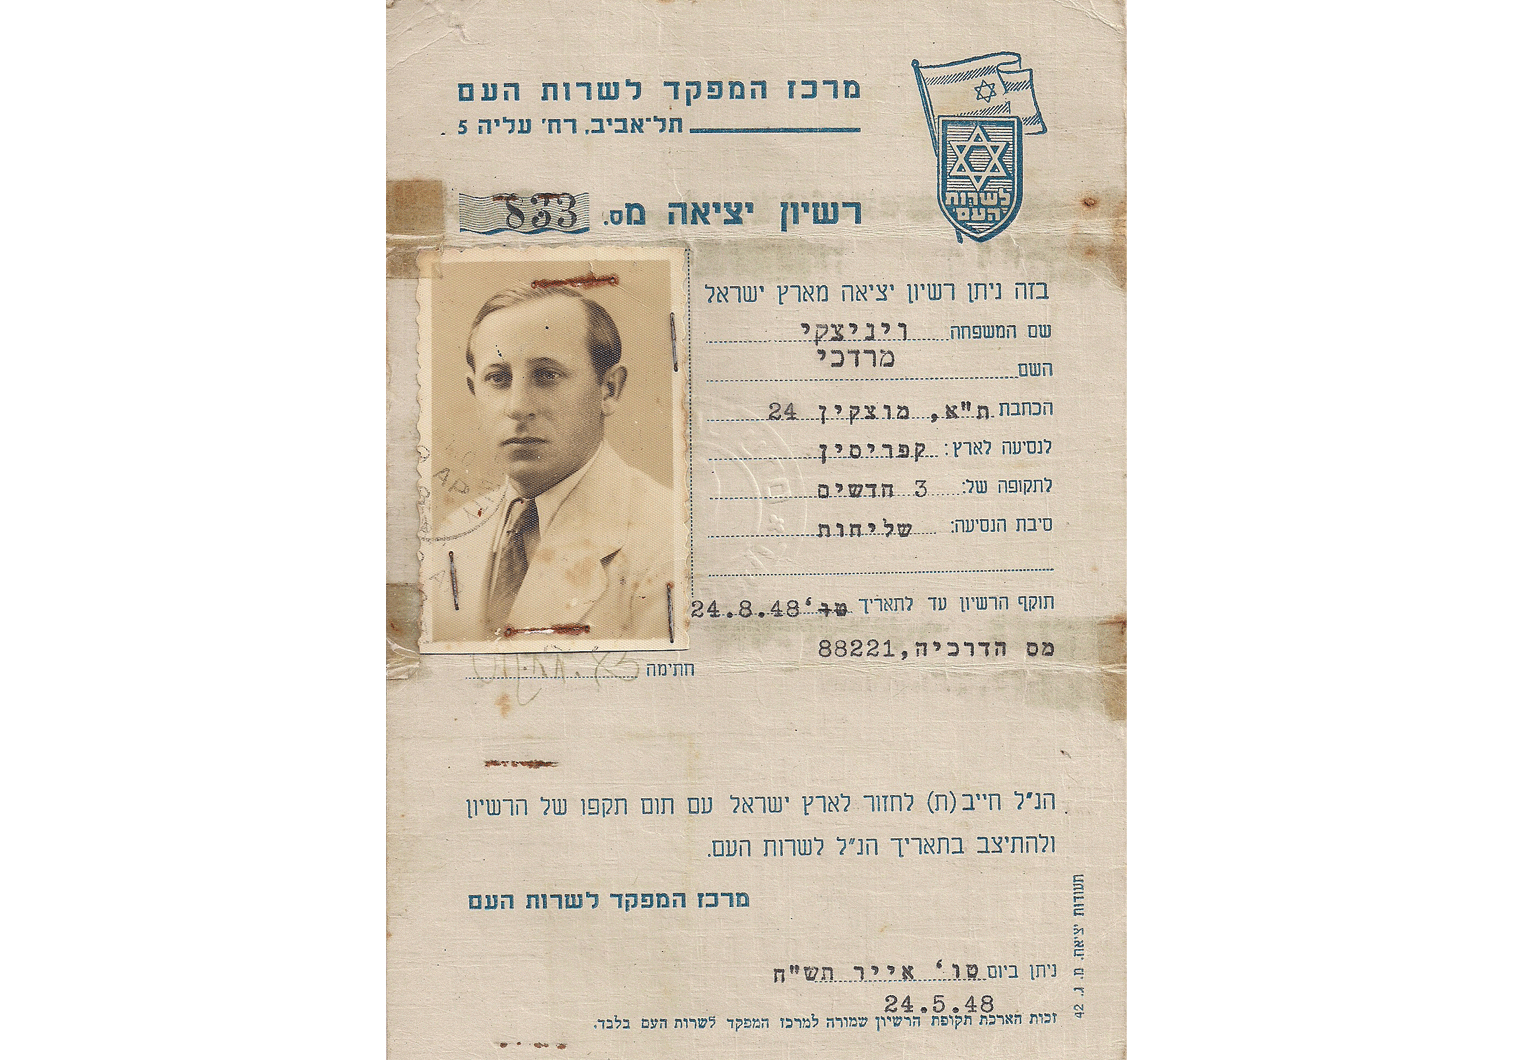 1948 interim travel document